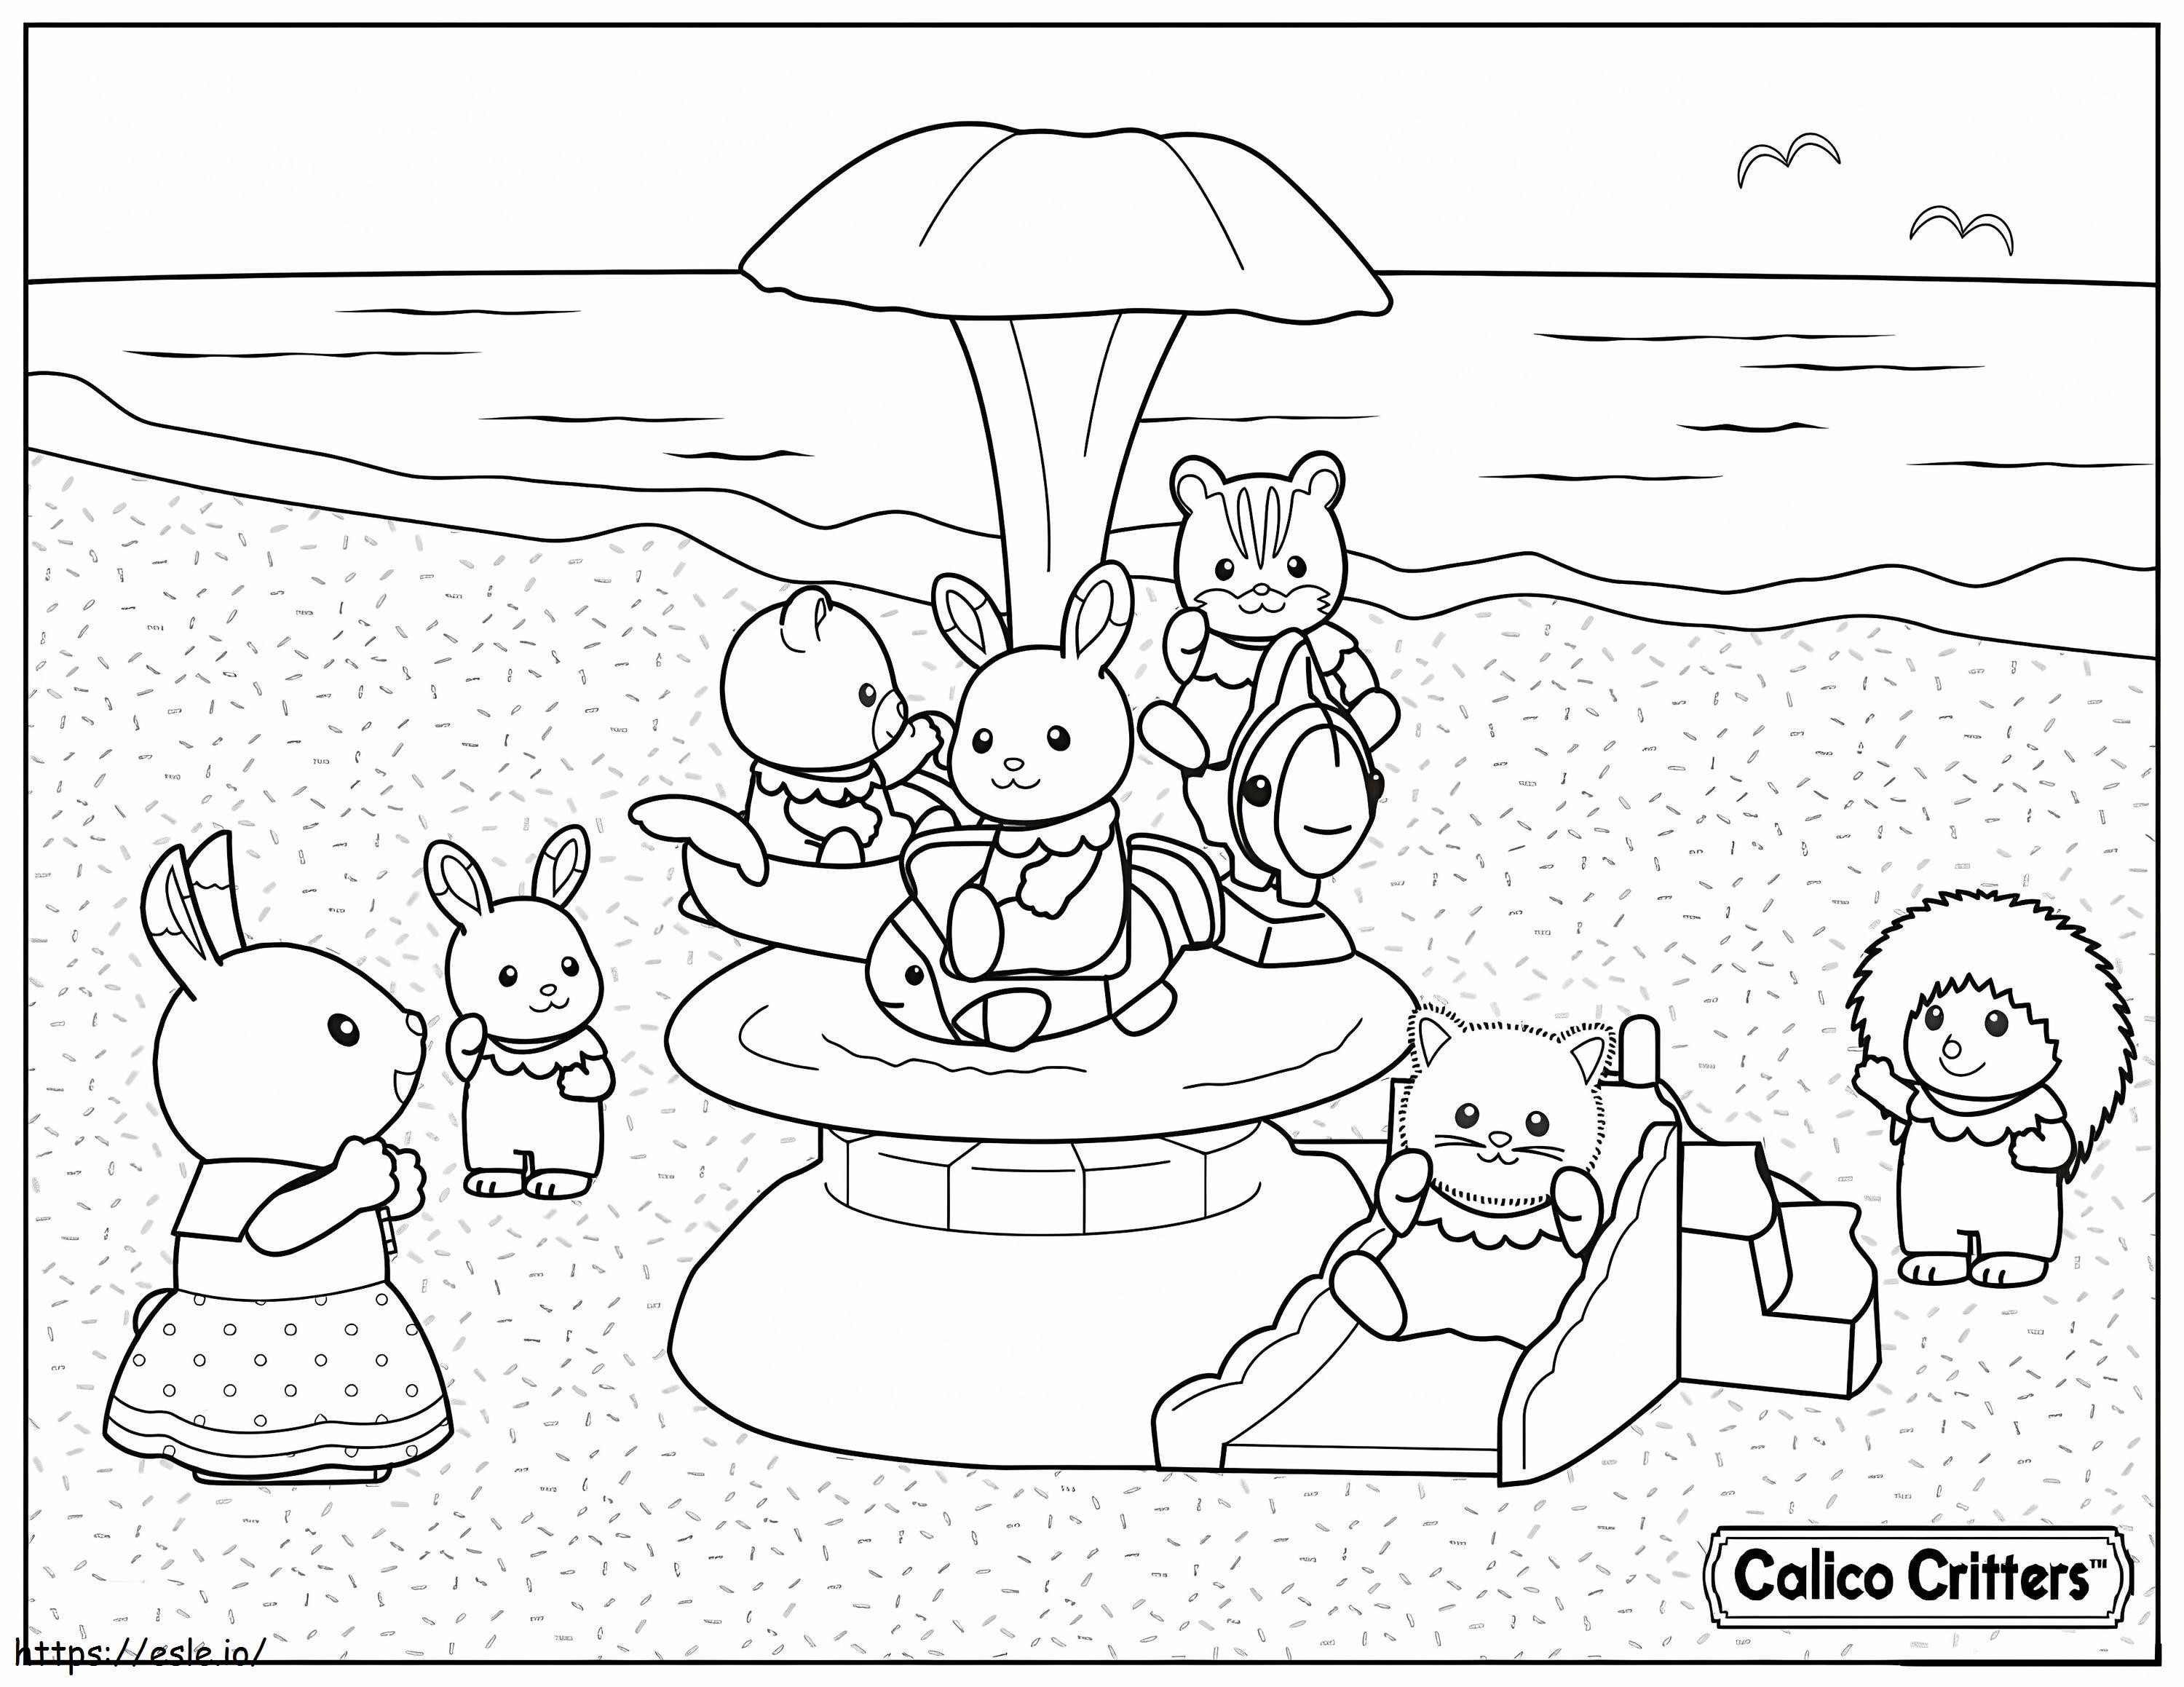 1591838758 1515174989Calico Critters in spiaggia per le vacanze da colorare